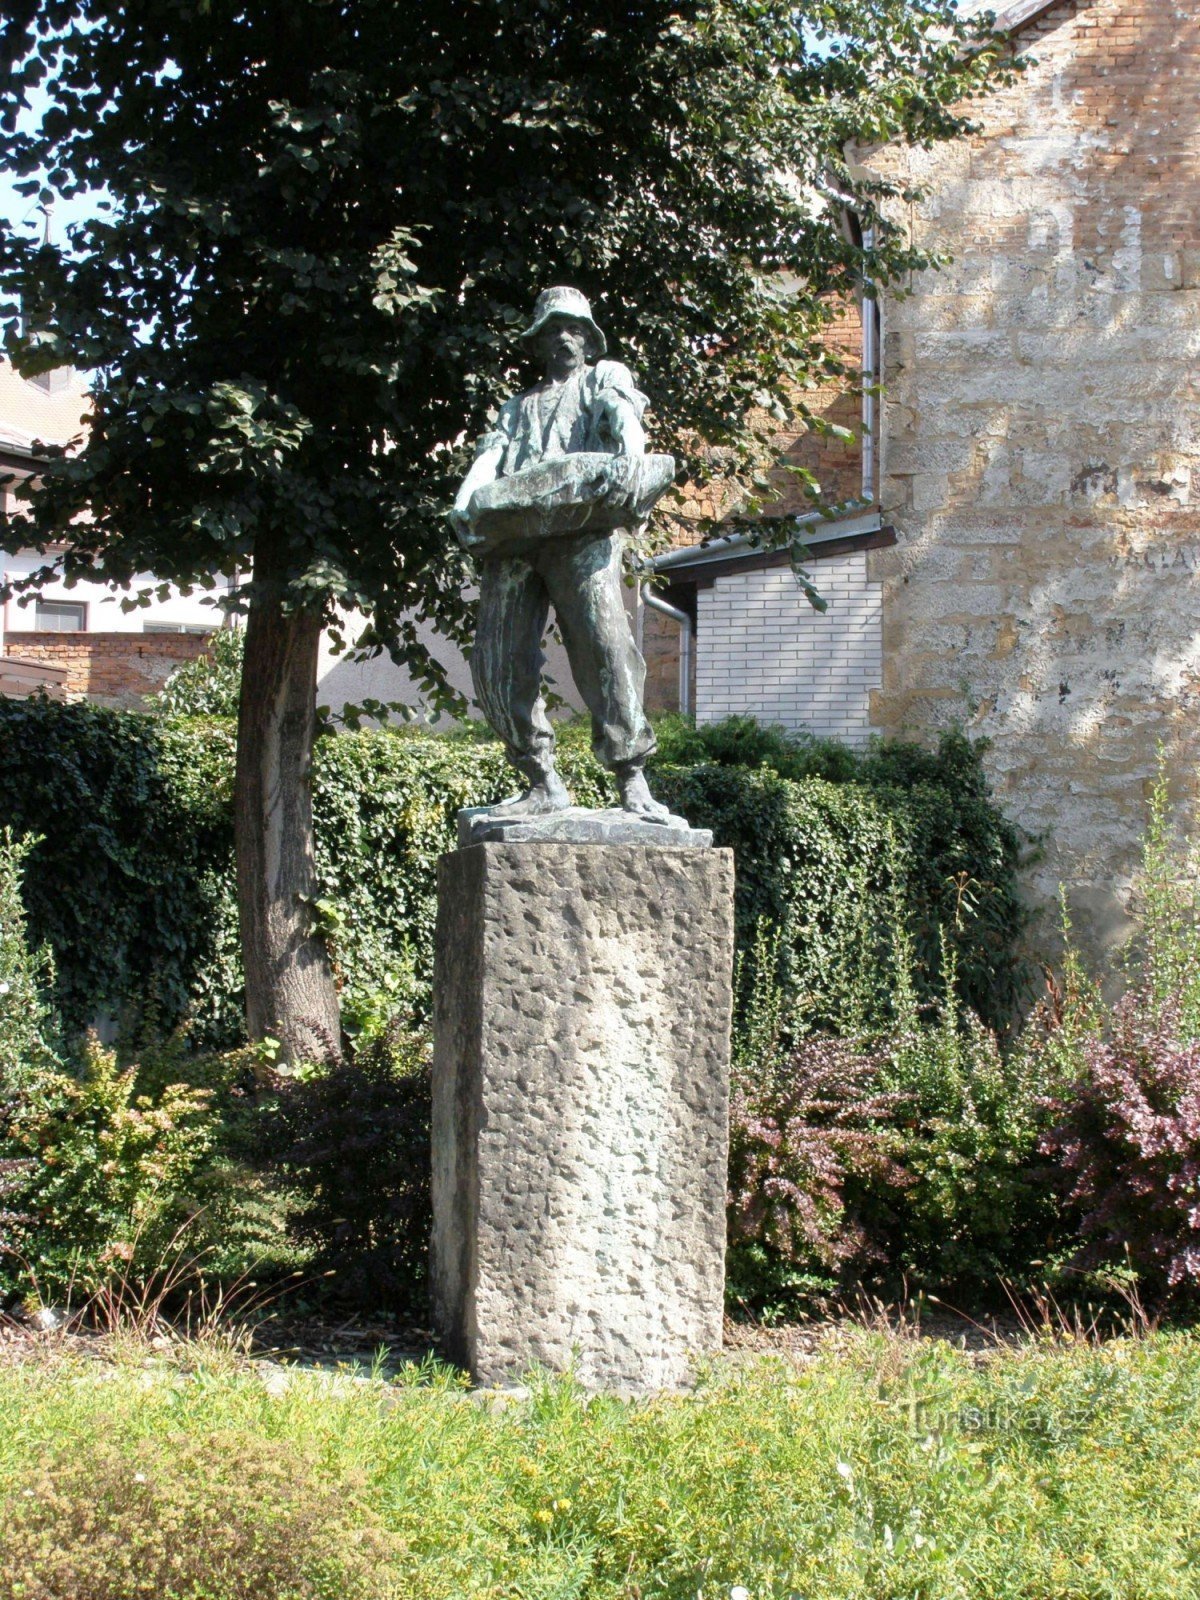 Hořice - statue af arbejdets mand